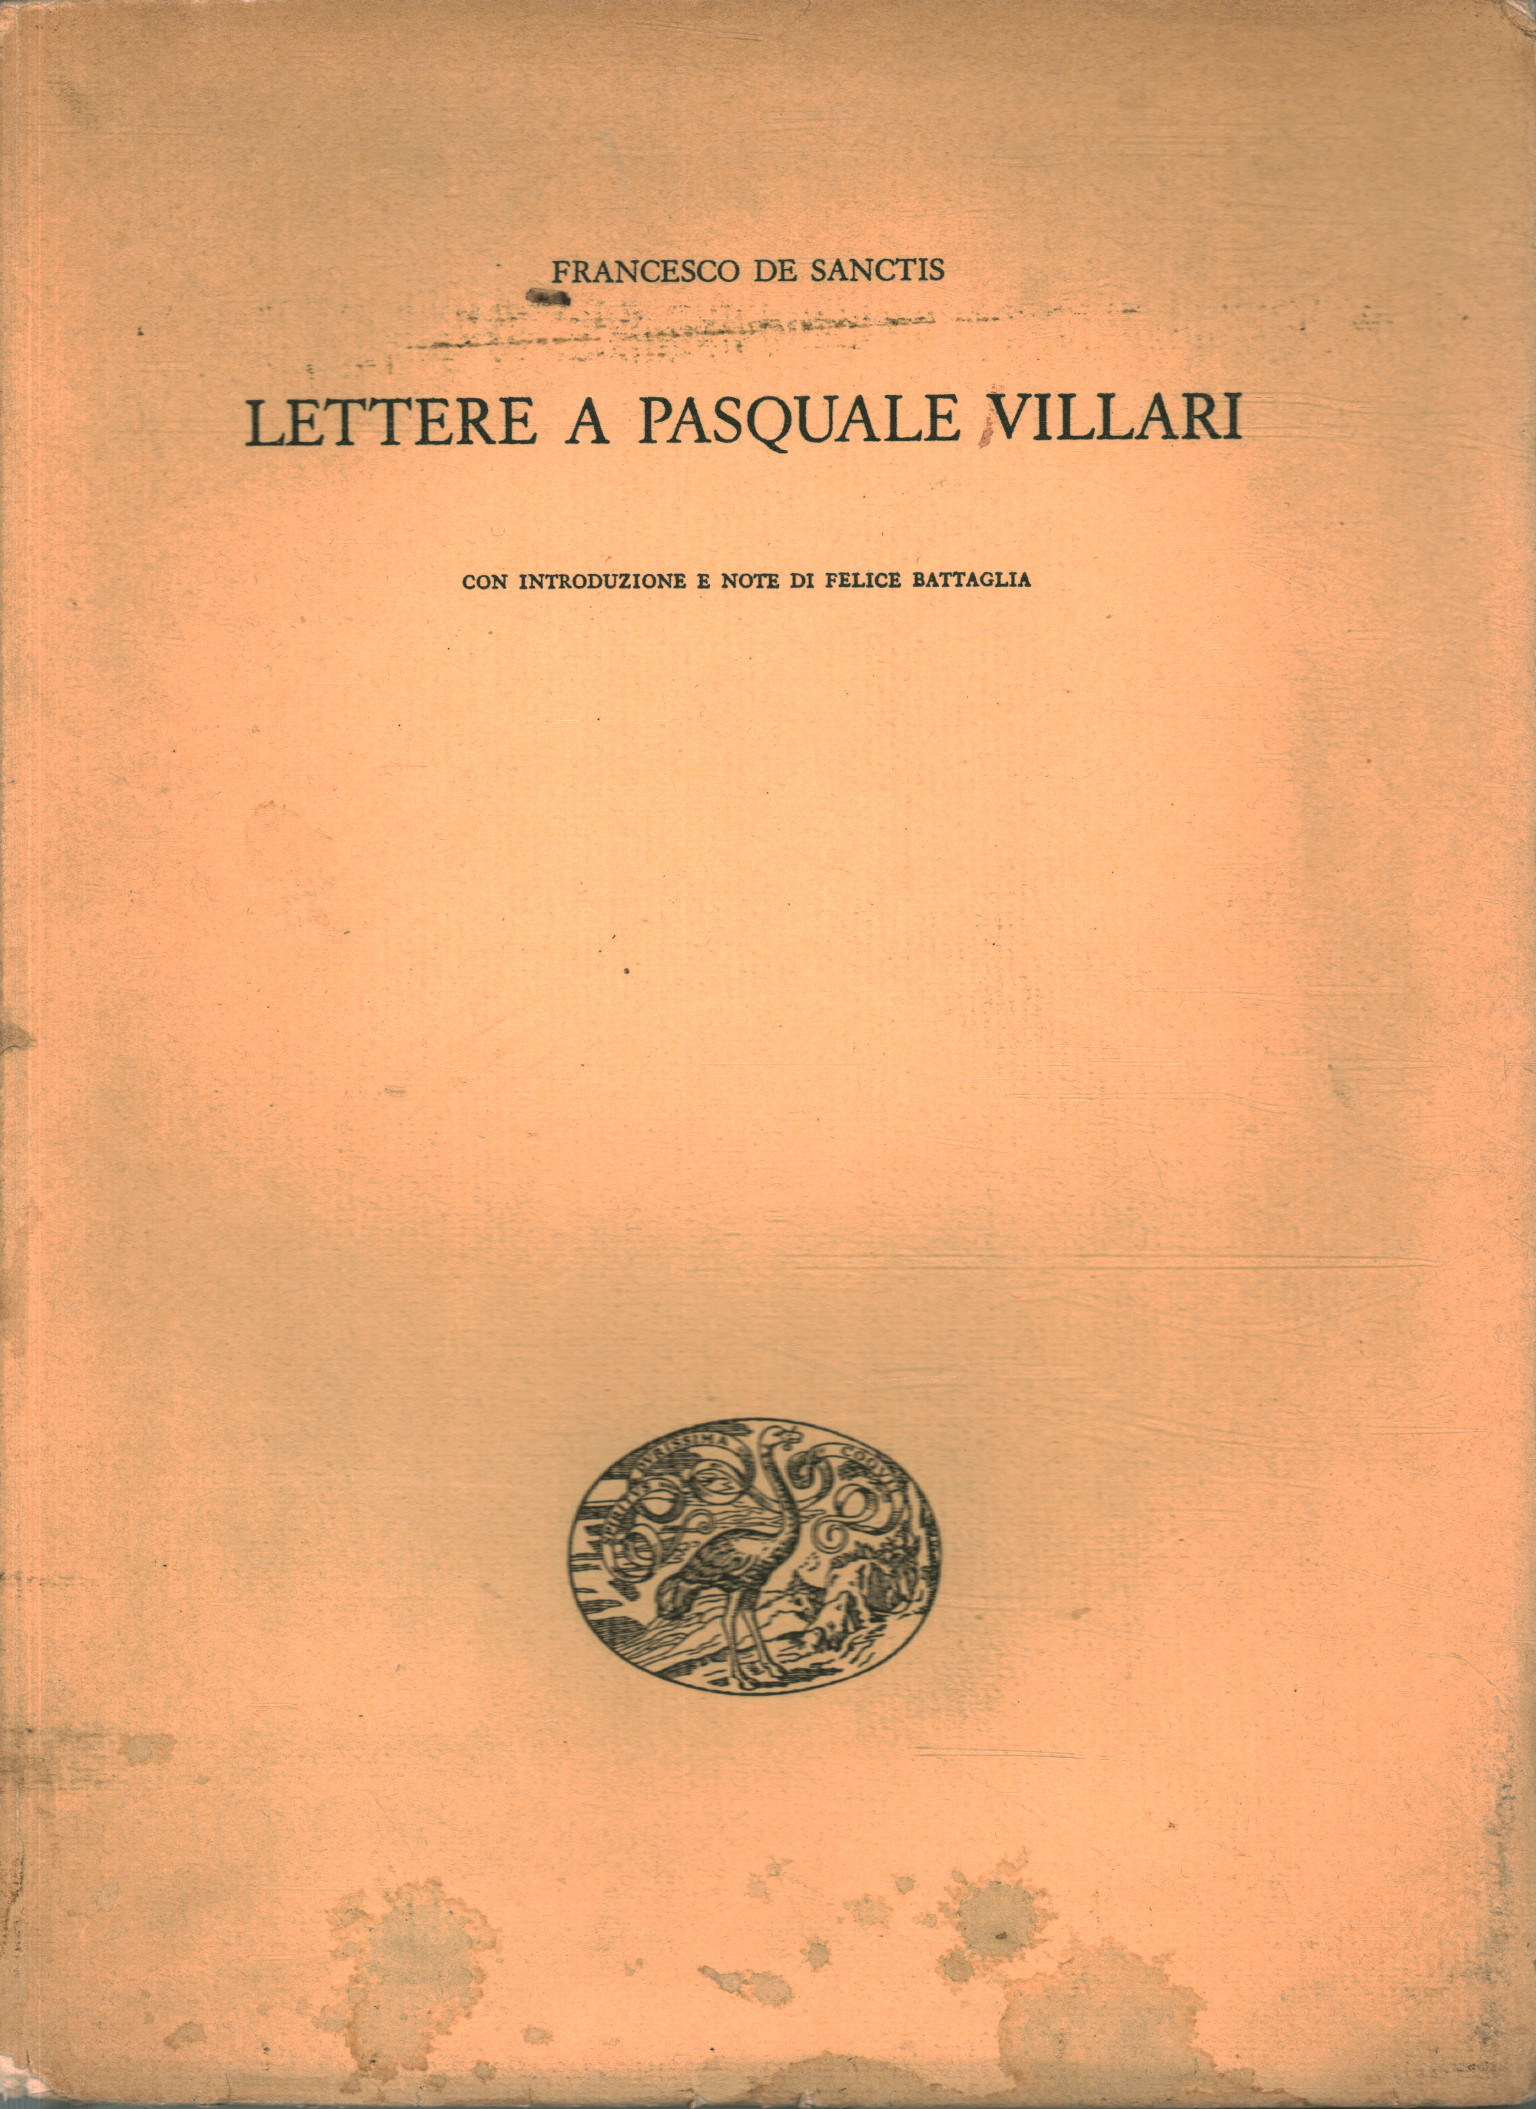 Briefe an Pasquale Villari, Francesco De Sanctis